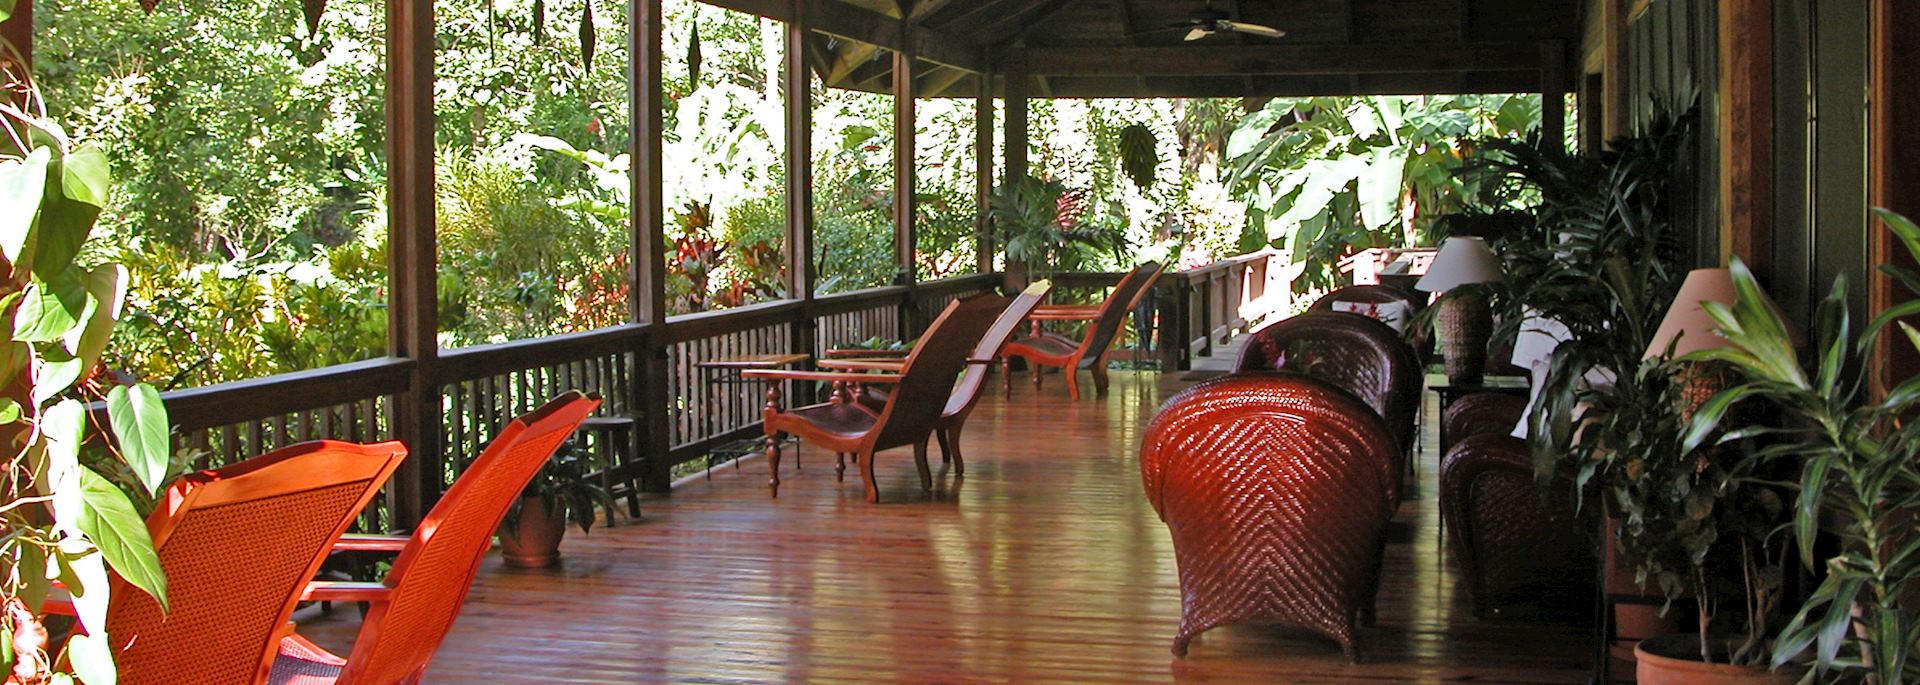 The Lodge at Pico Bonito, La Ceiba